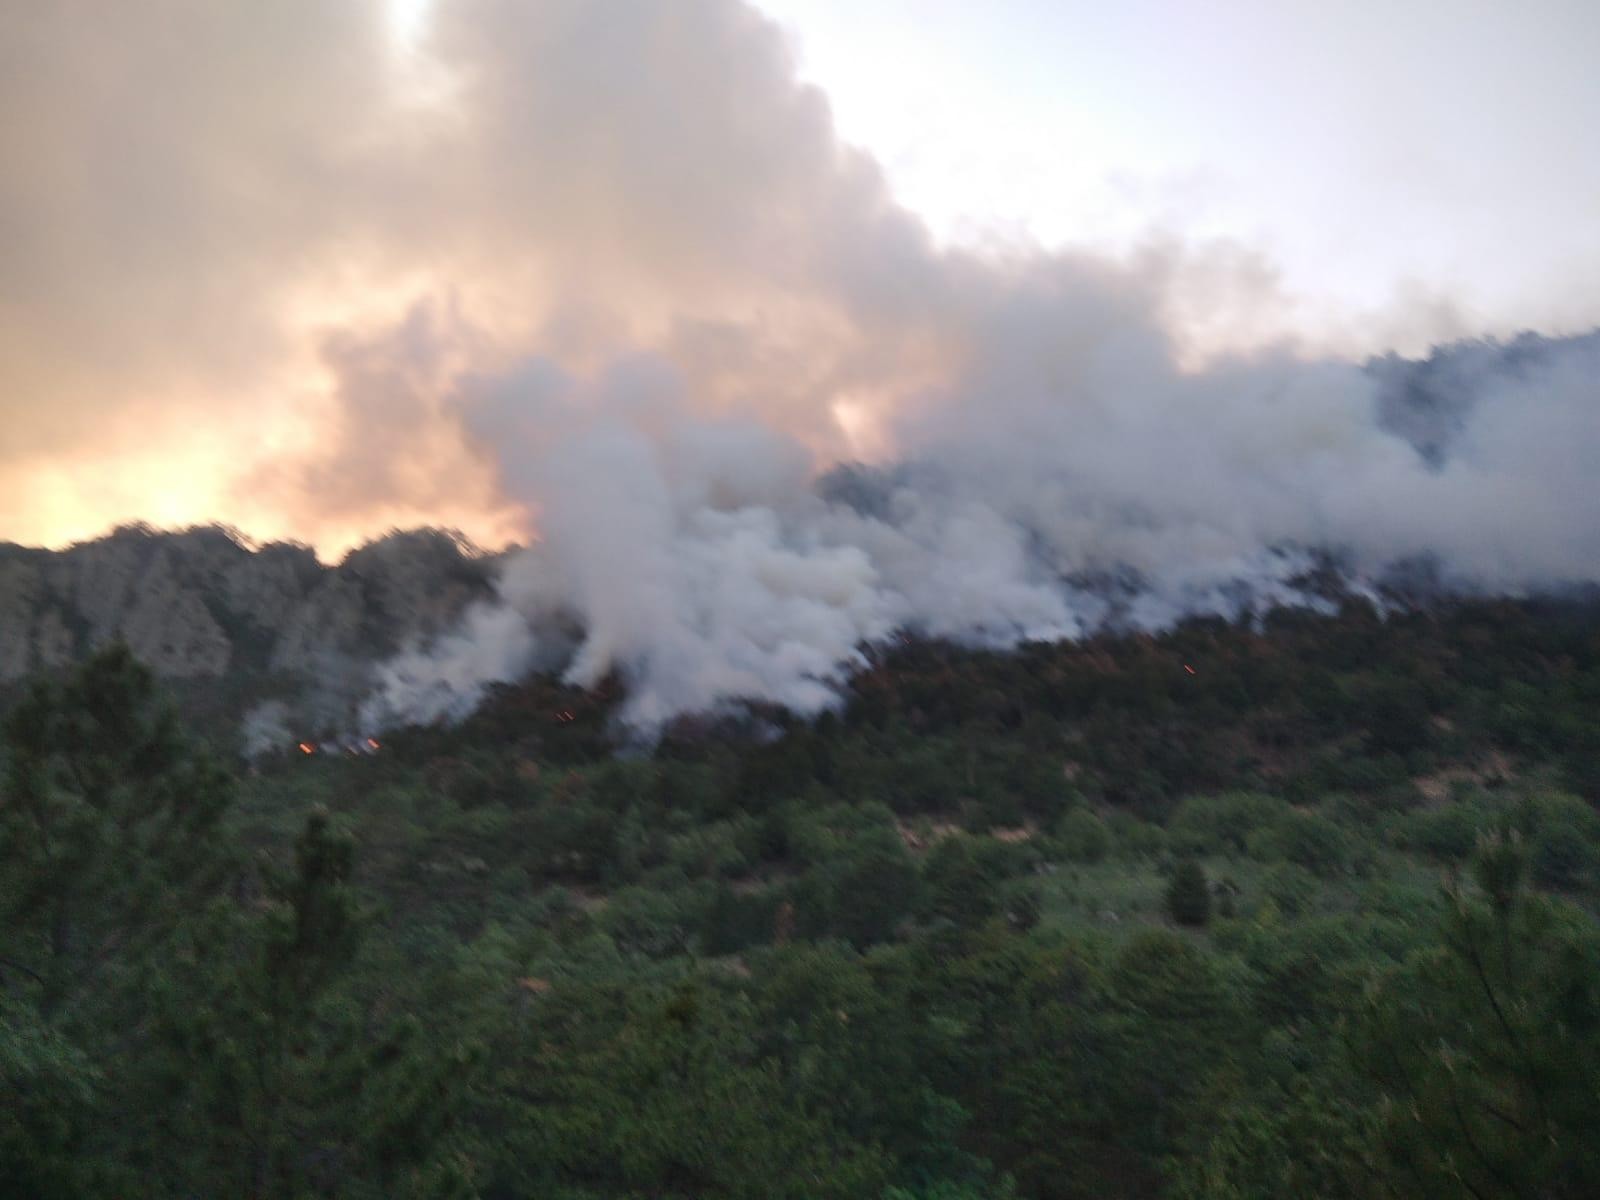 Bolu’da orman yangınında 7 hektar alan zarar gördü